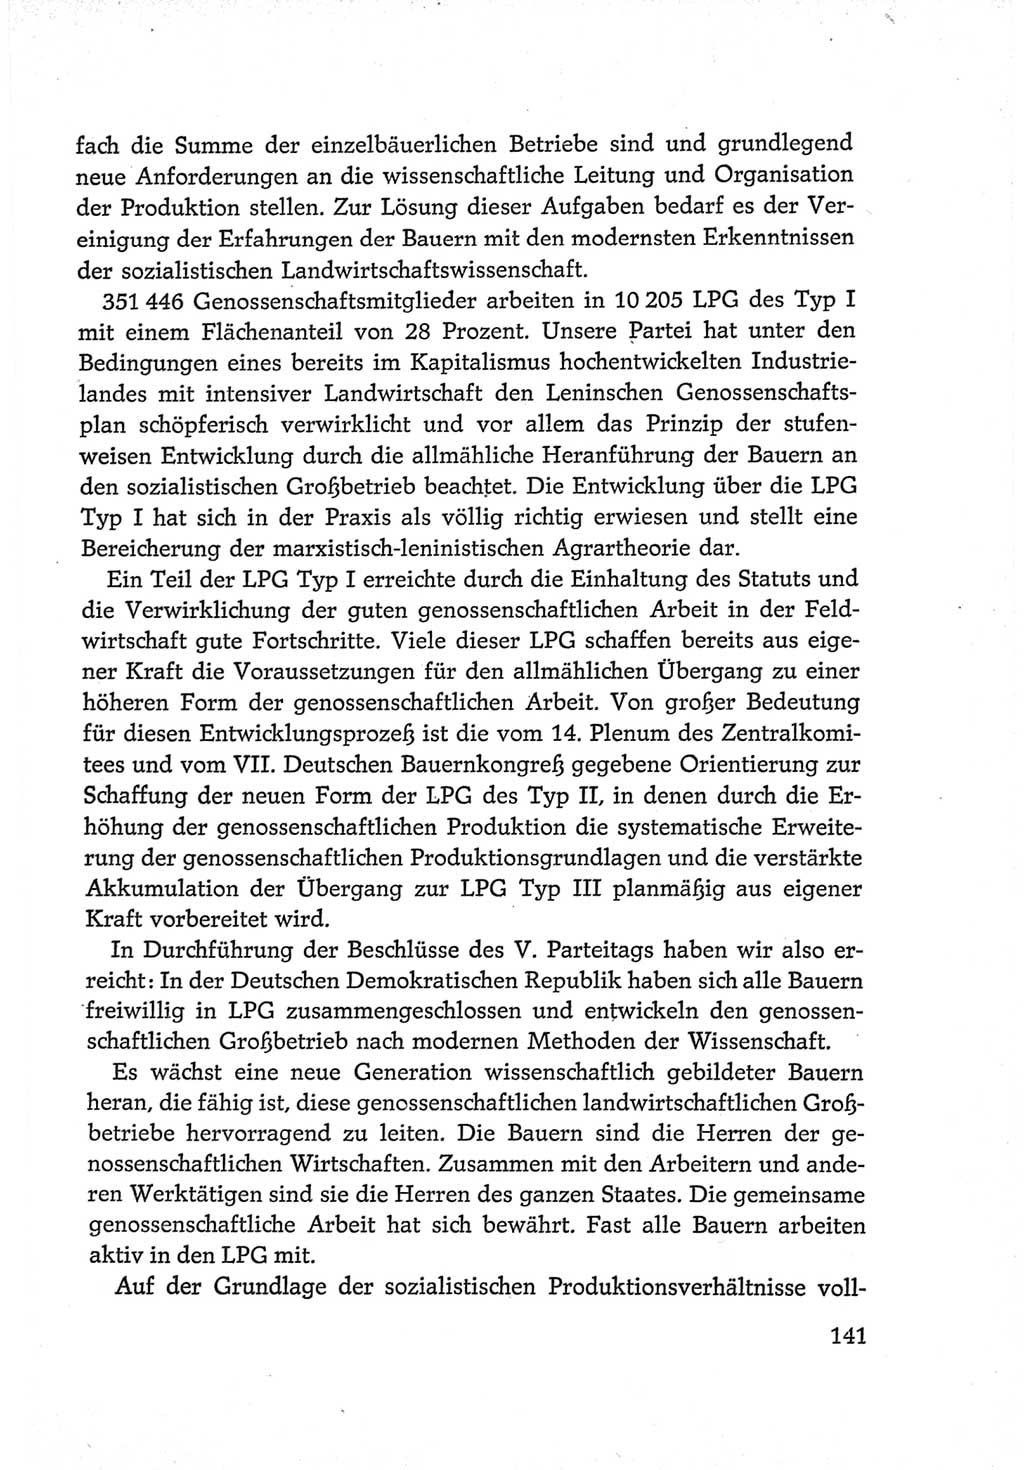 Protokoll der Verhandlungen des Ⅵ. Parteitages der Sozialistischen Einheitspartei Deutschlands (SED) [Deutsche Demokratische Republik (DDR)] 1963, Band Ⅳ, Seite 141 (Prot. Verh. Ⅵ. PT SED DDR 1963, Bd. Ⅳ, S. 141)